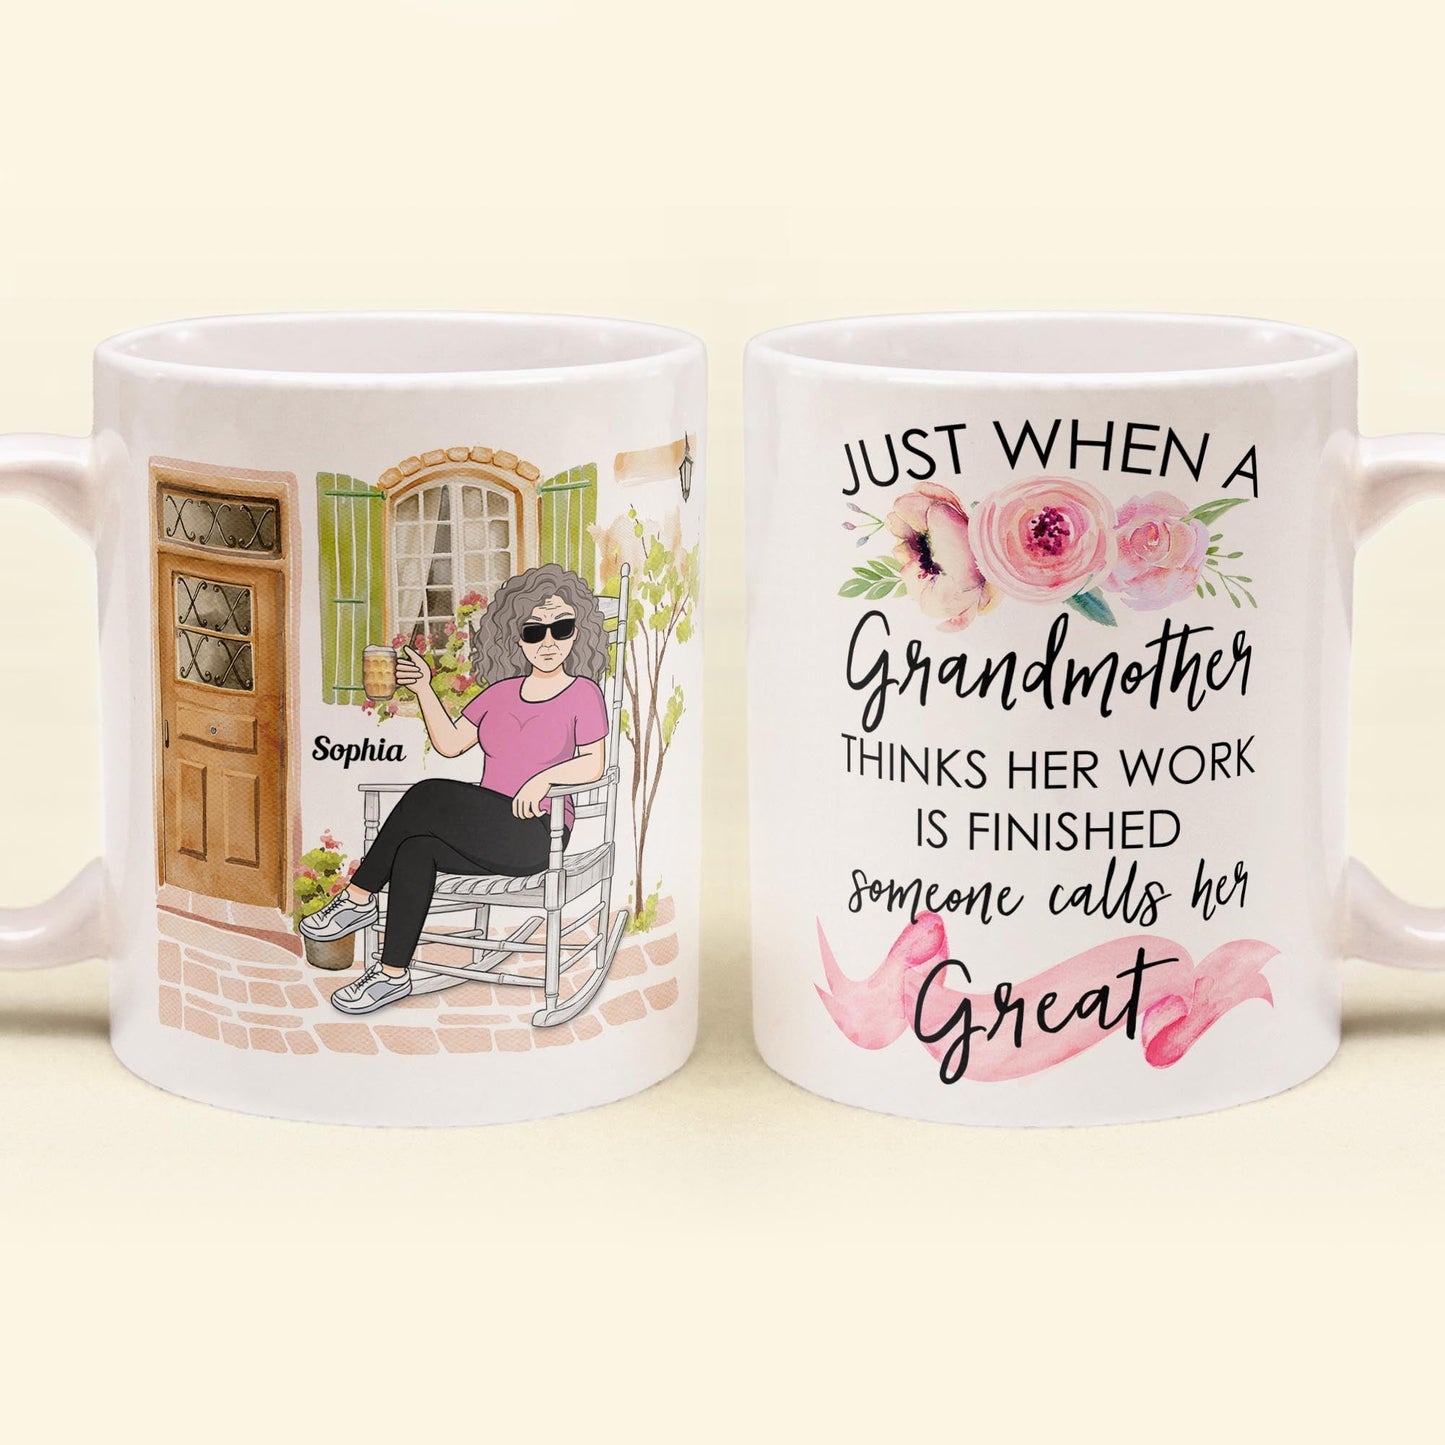 Great Grandparent - Personalized Mug - Pregnancy, Baby Announcement Gift For Great - Grandma, Grandma , Great Grandpa, Grandpa  - Baby Reveal To Family.